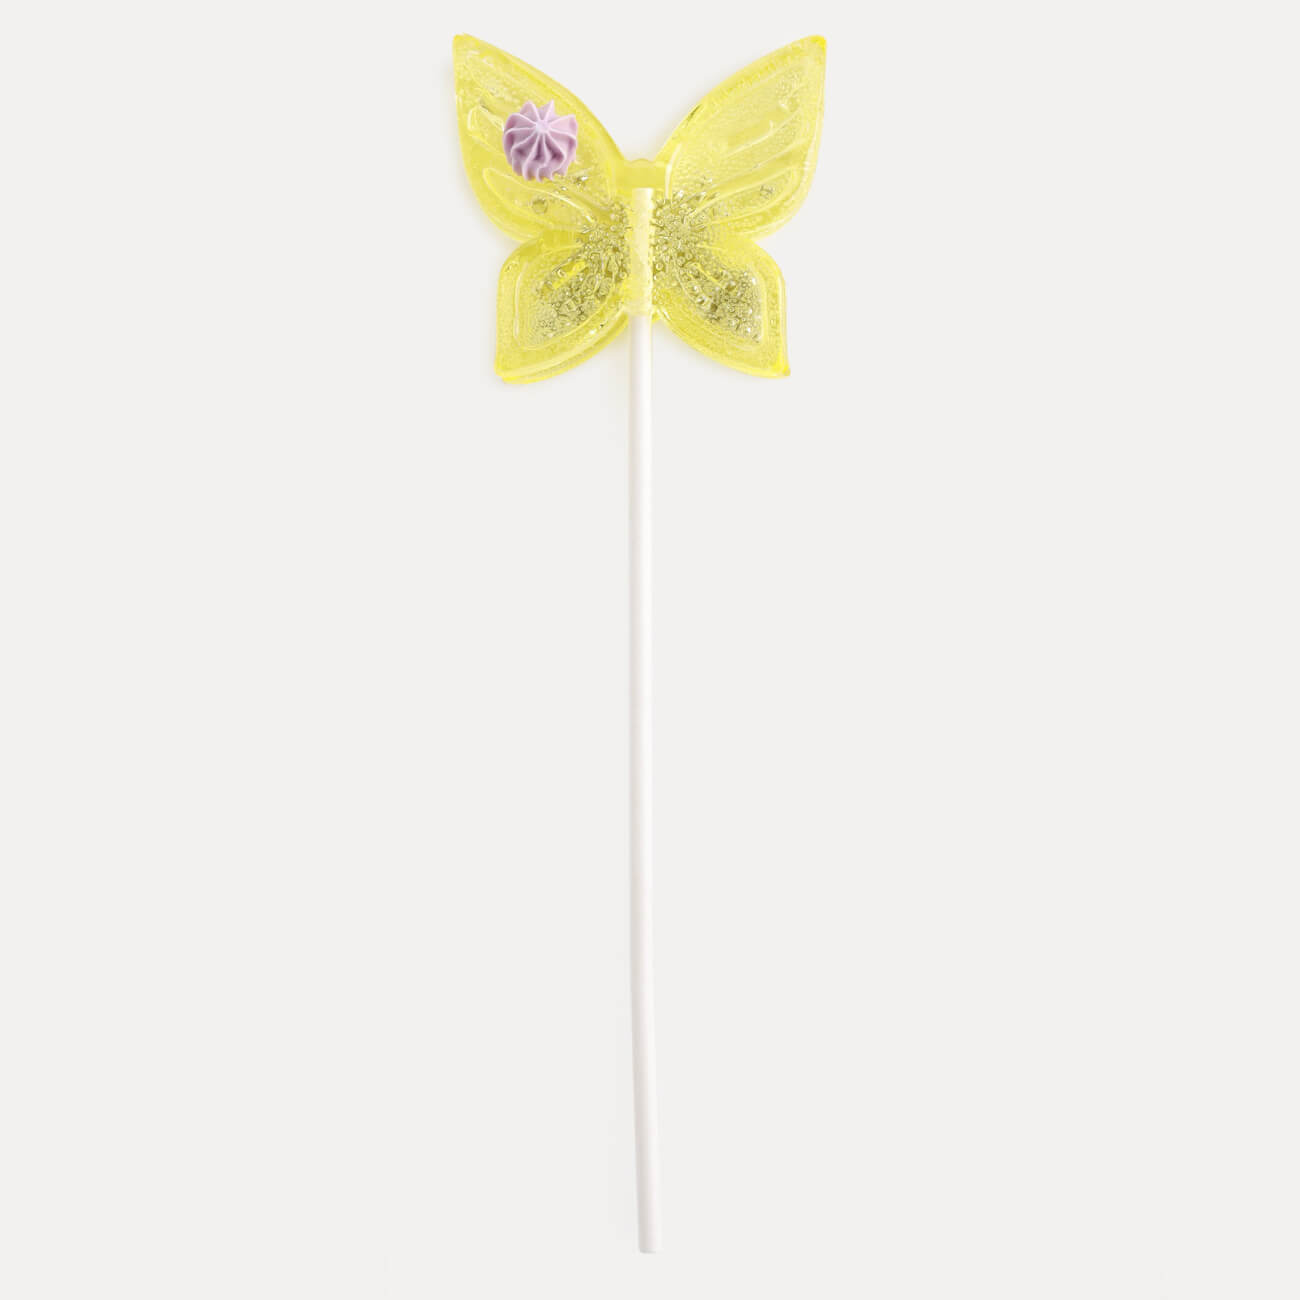 Леденец, 30 гр, погремушка, на палочке, изомальт, желтый, Бабочка, Butterfly браслетик погремушка